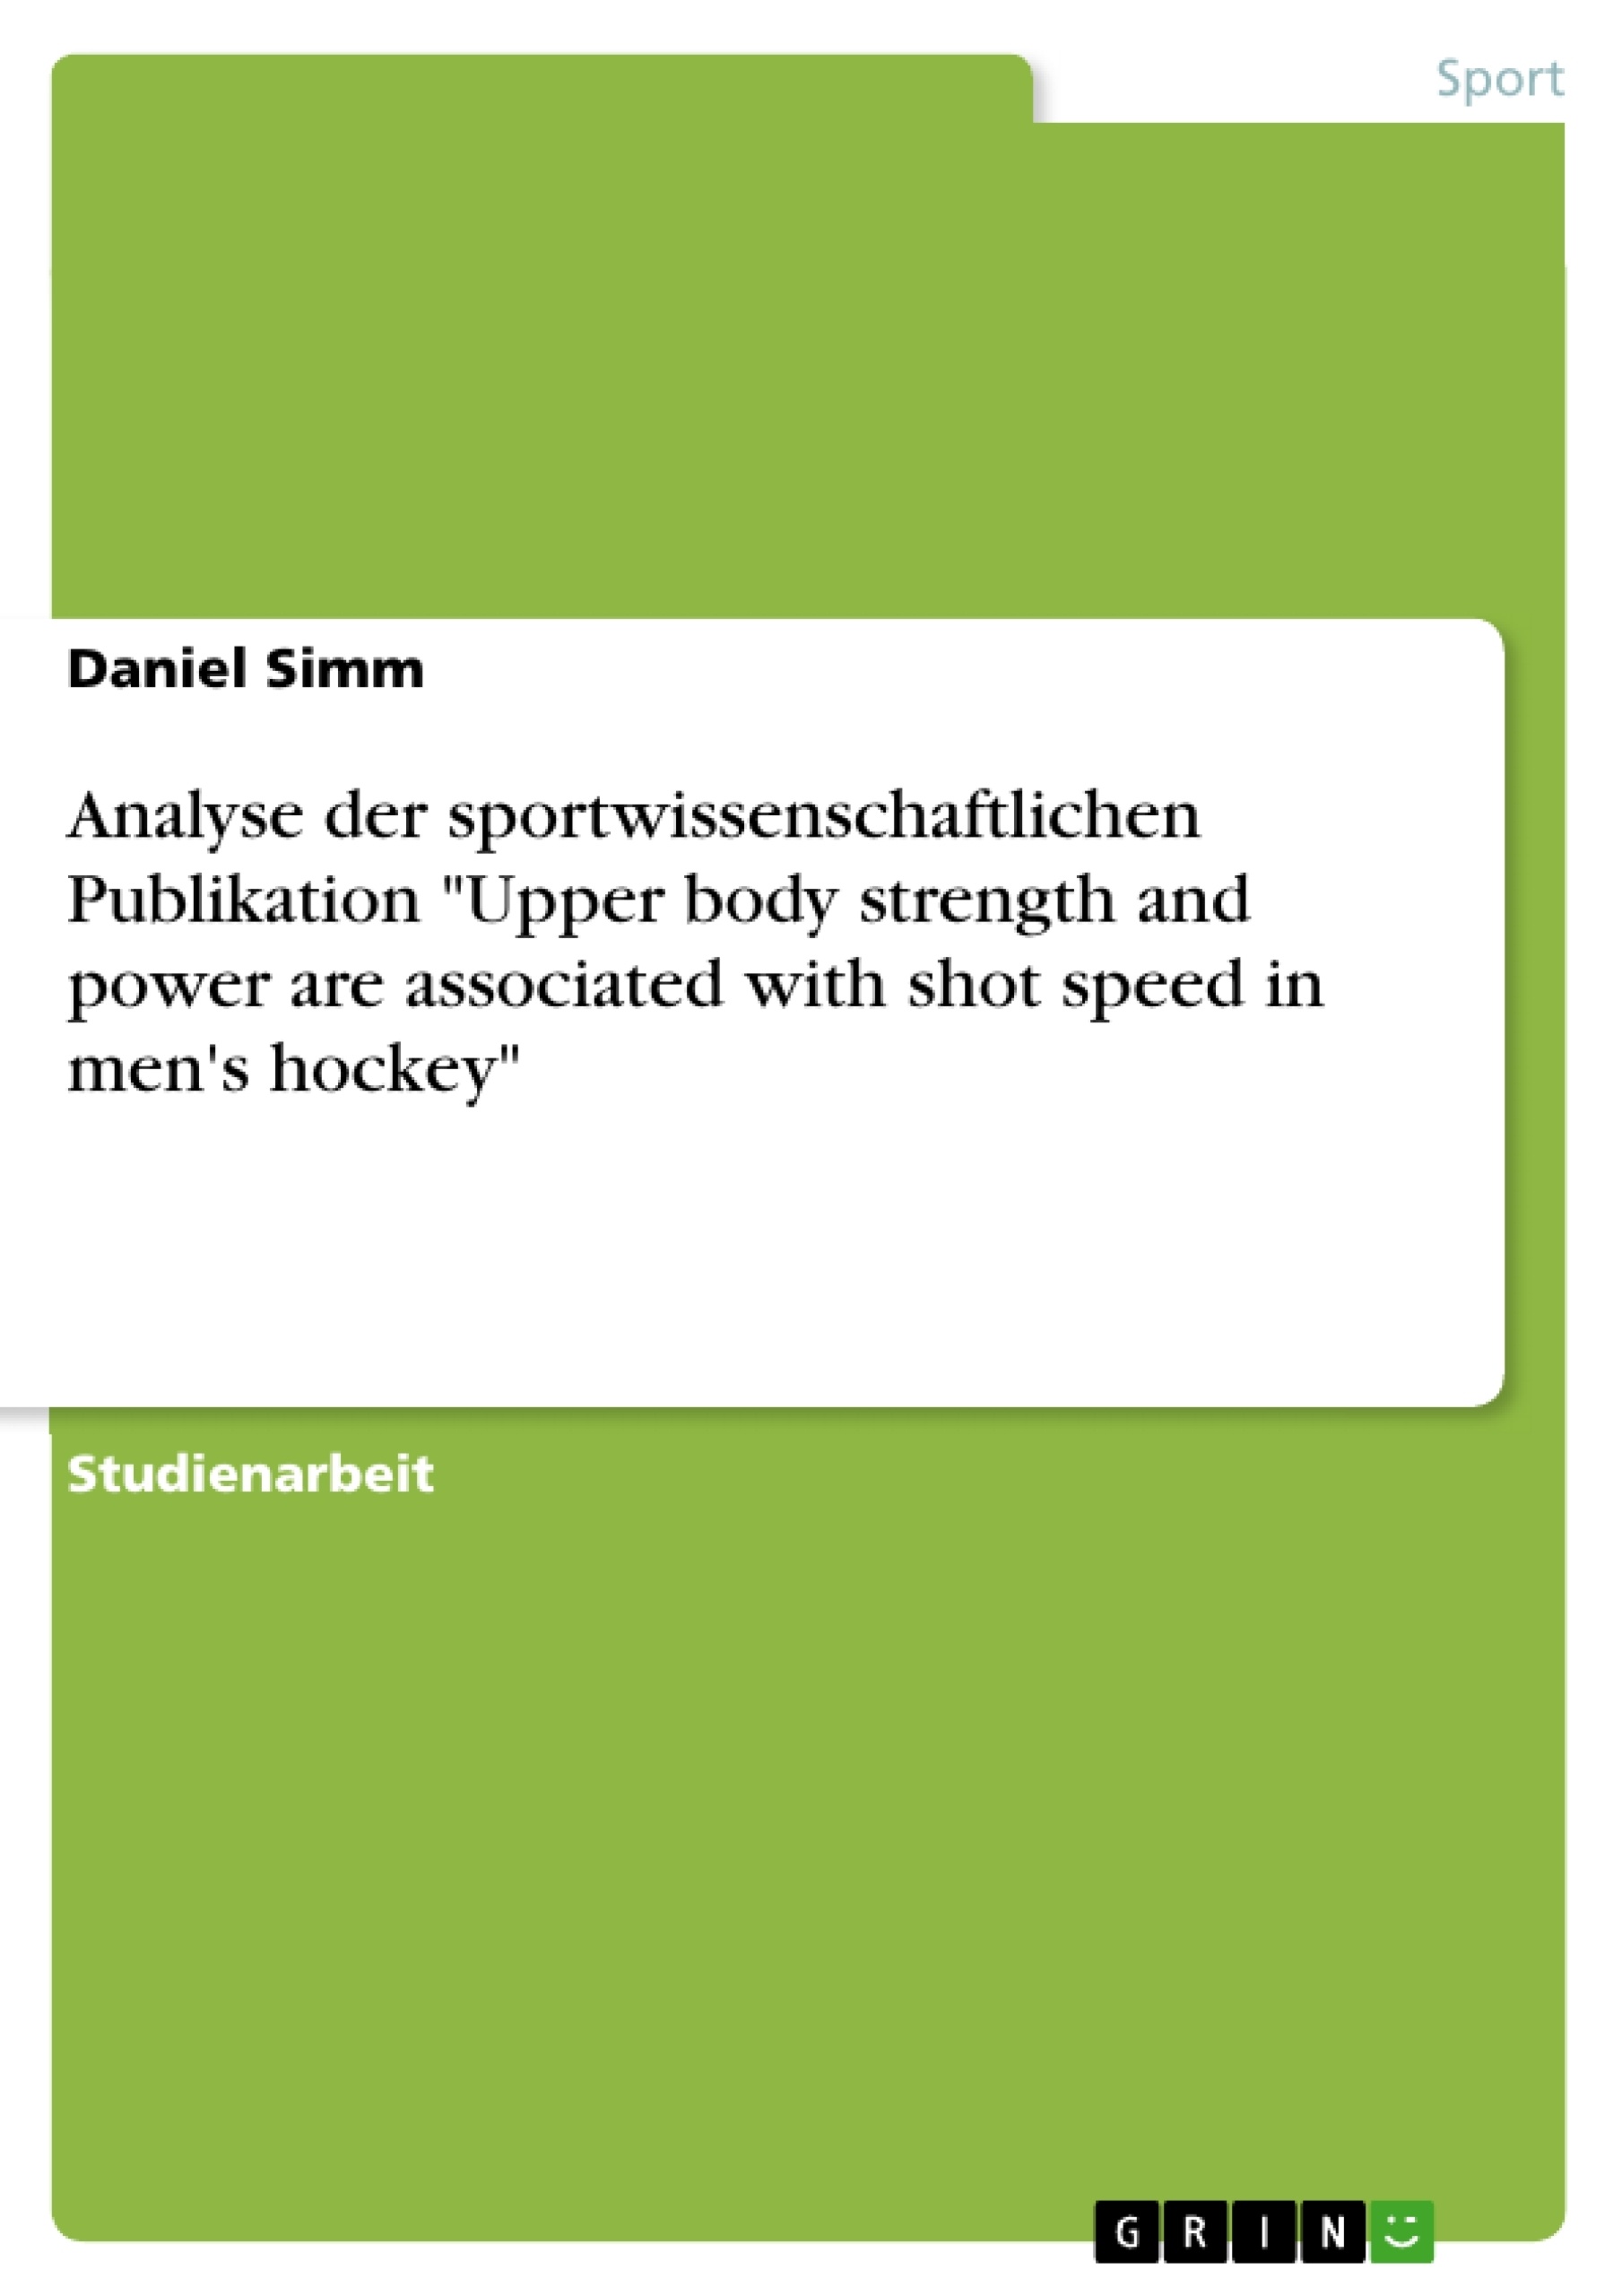 Titre: Analyse der sportwissenschaftlichen Publikation "Upper body strength and power are associated with shot speed in men's hockey"